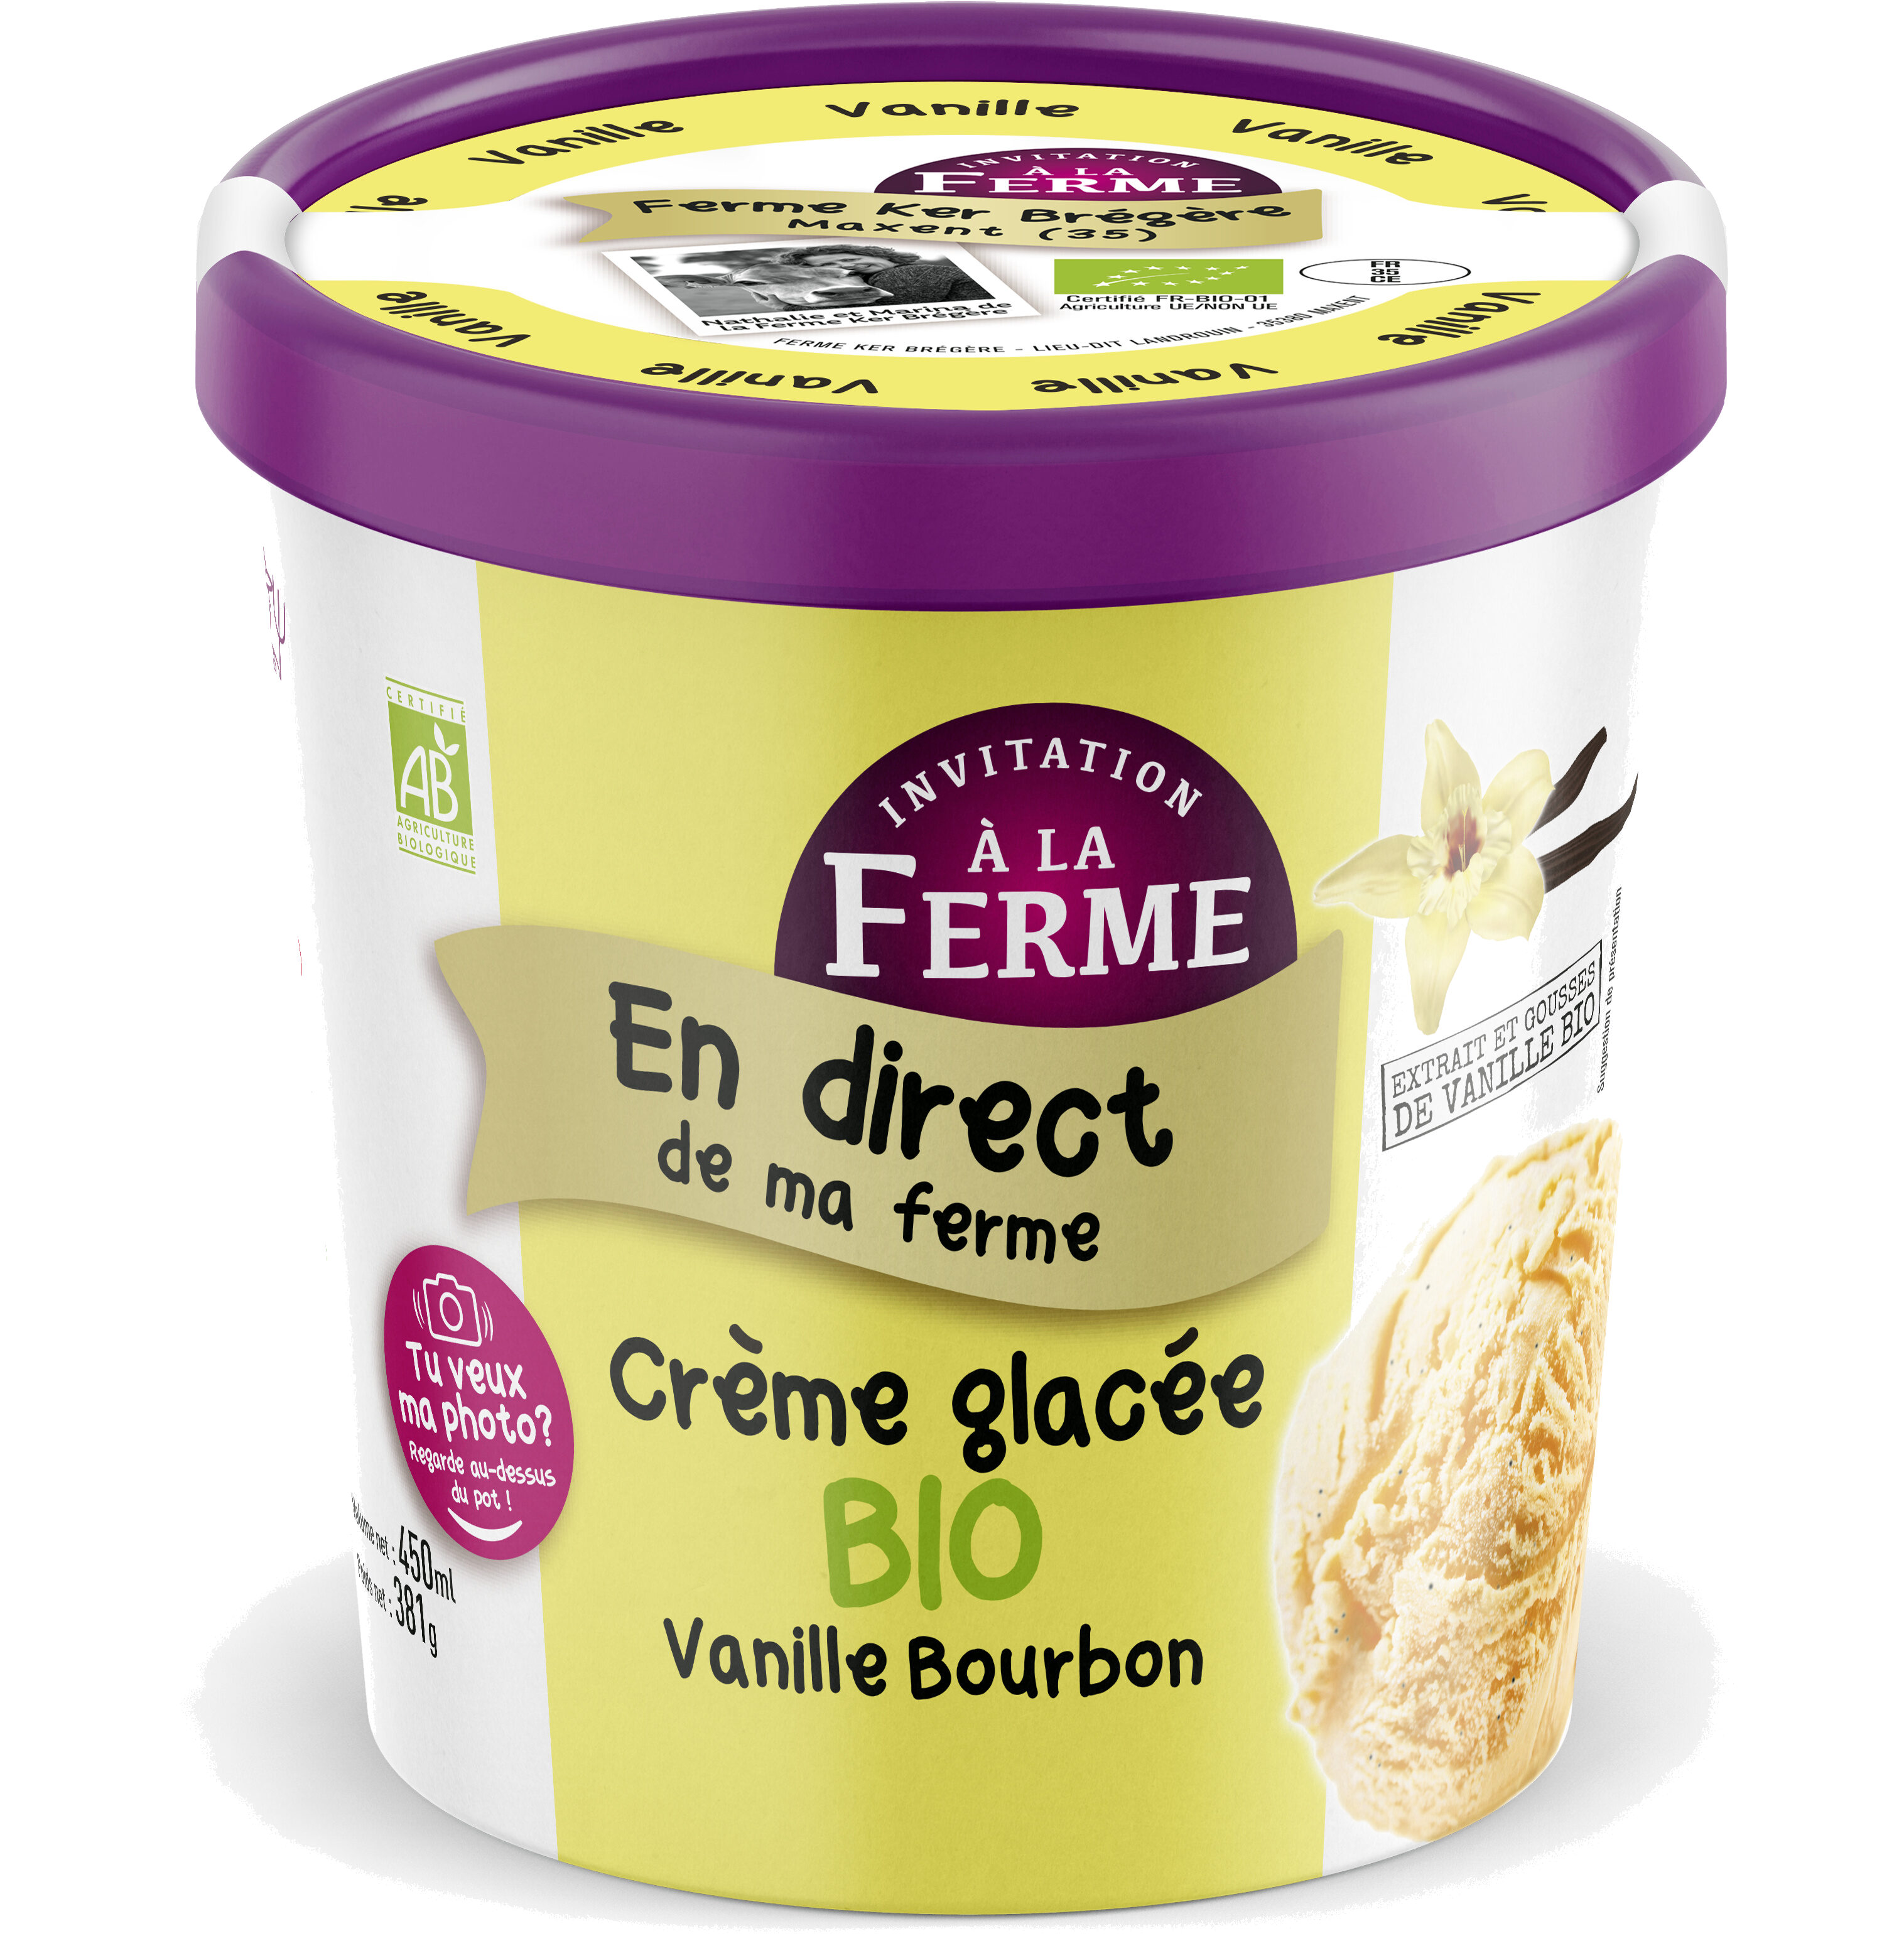 Crème glacée bio Vanille Bourbon - Product - fr